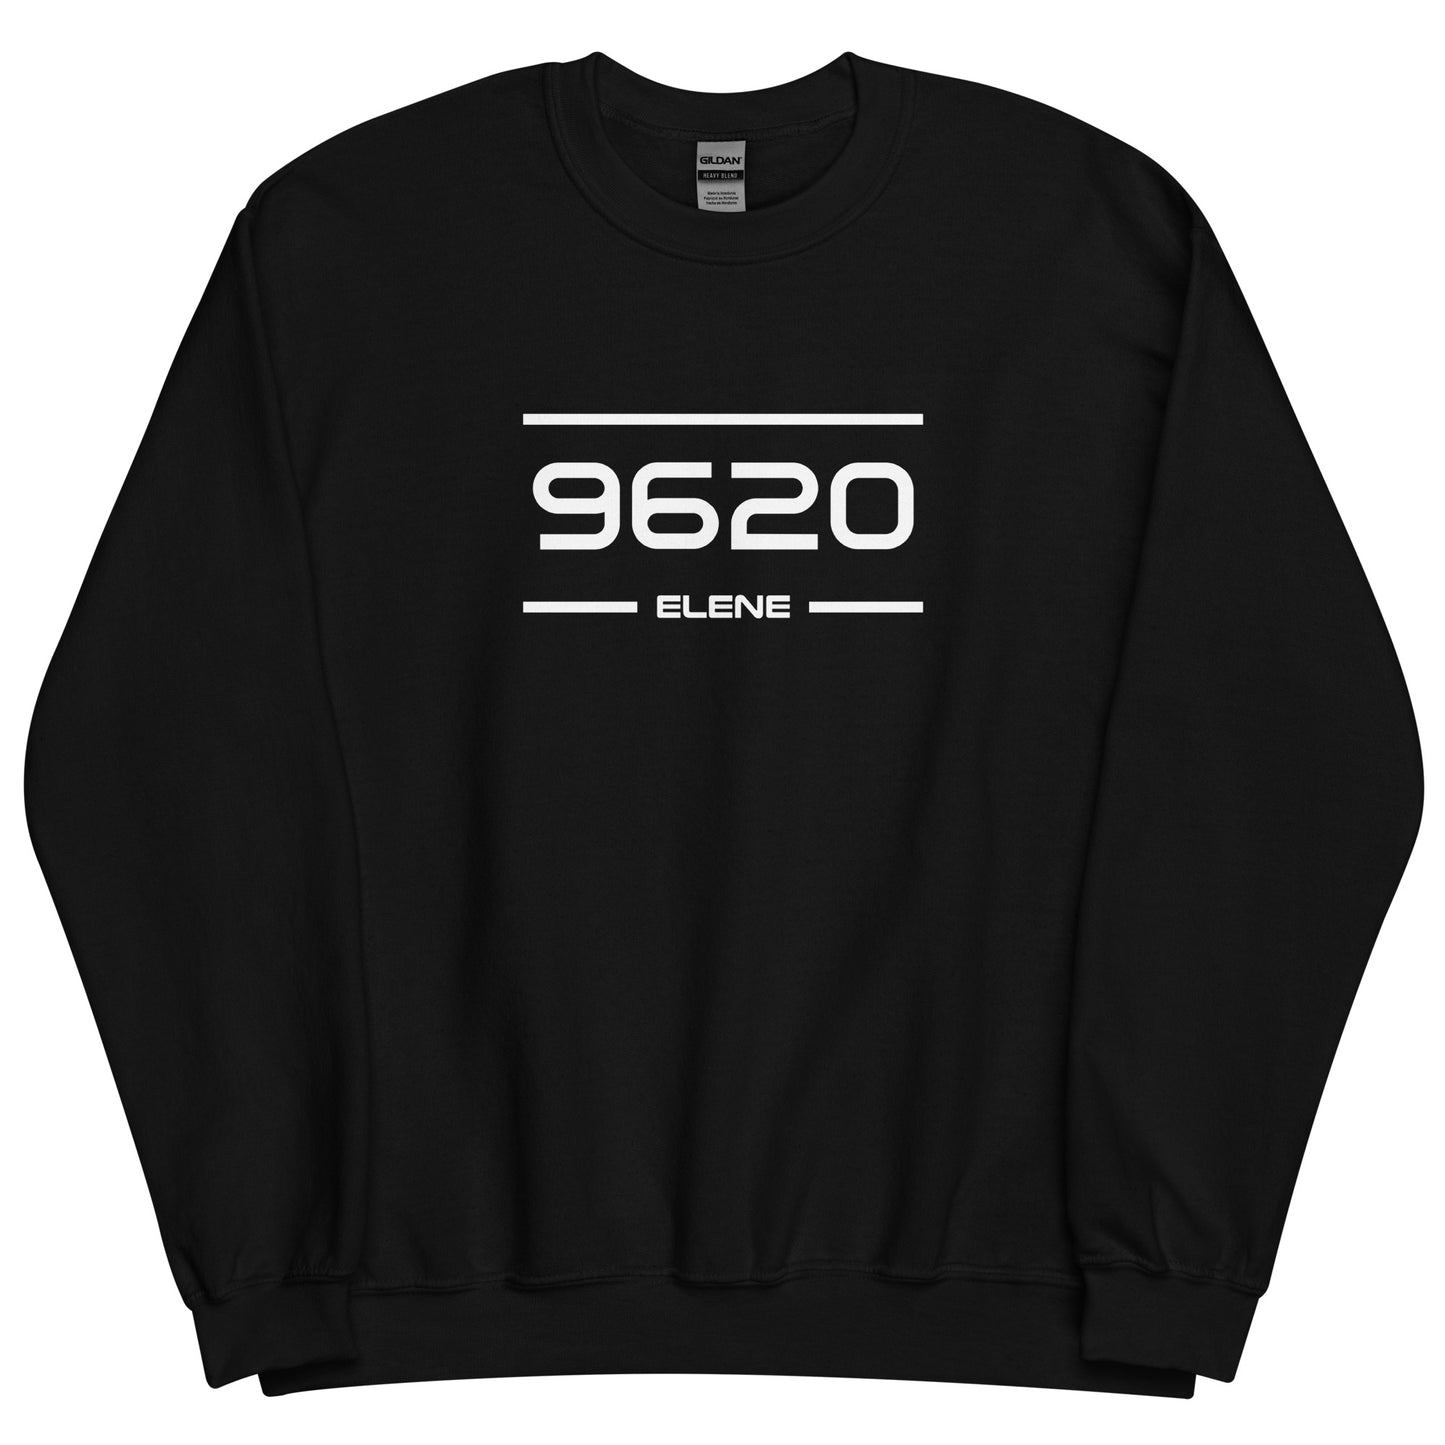 Sweater - 9620 - Elene (M/V)